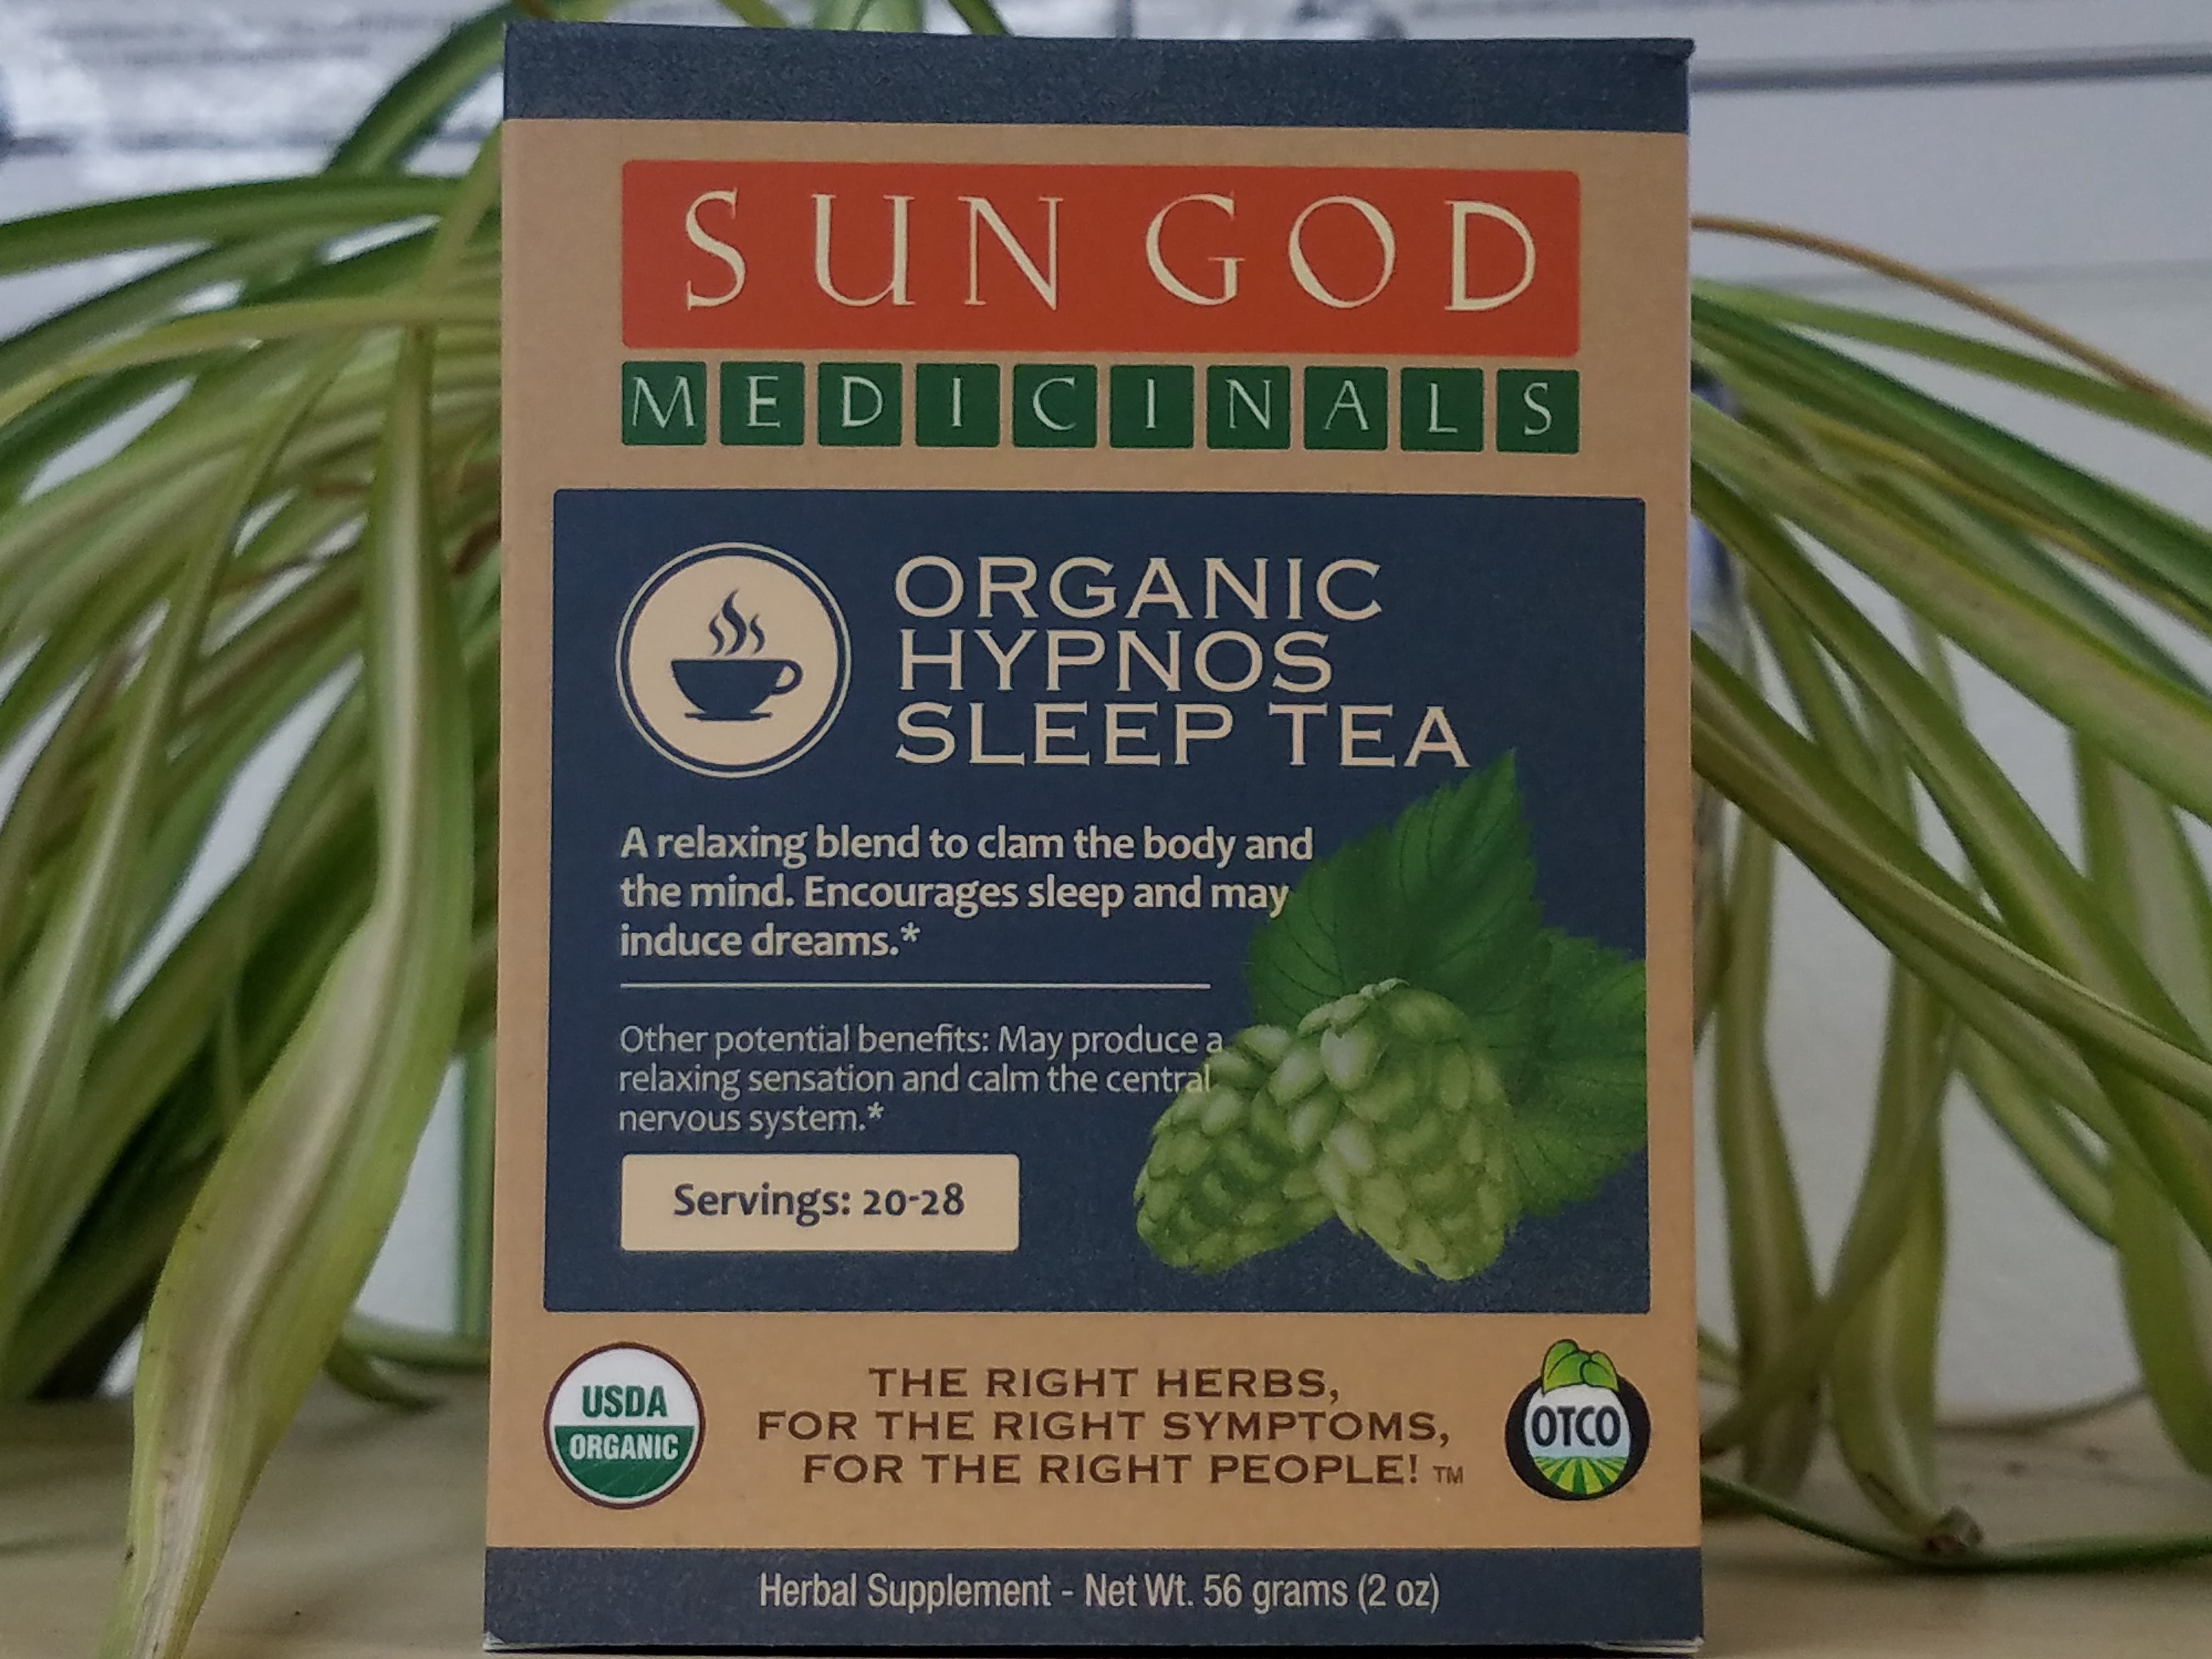 edible-sun-god-hypnos-herbal-sleep-tea